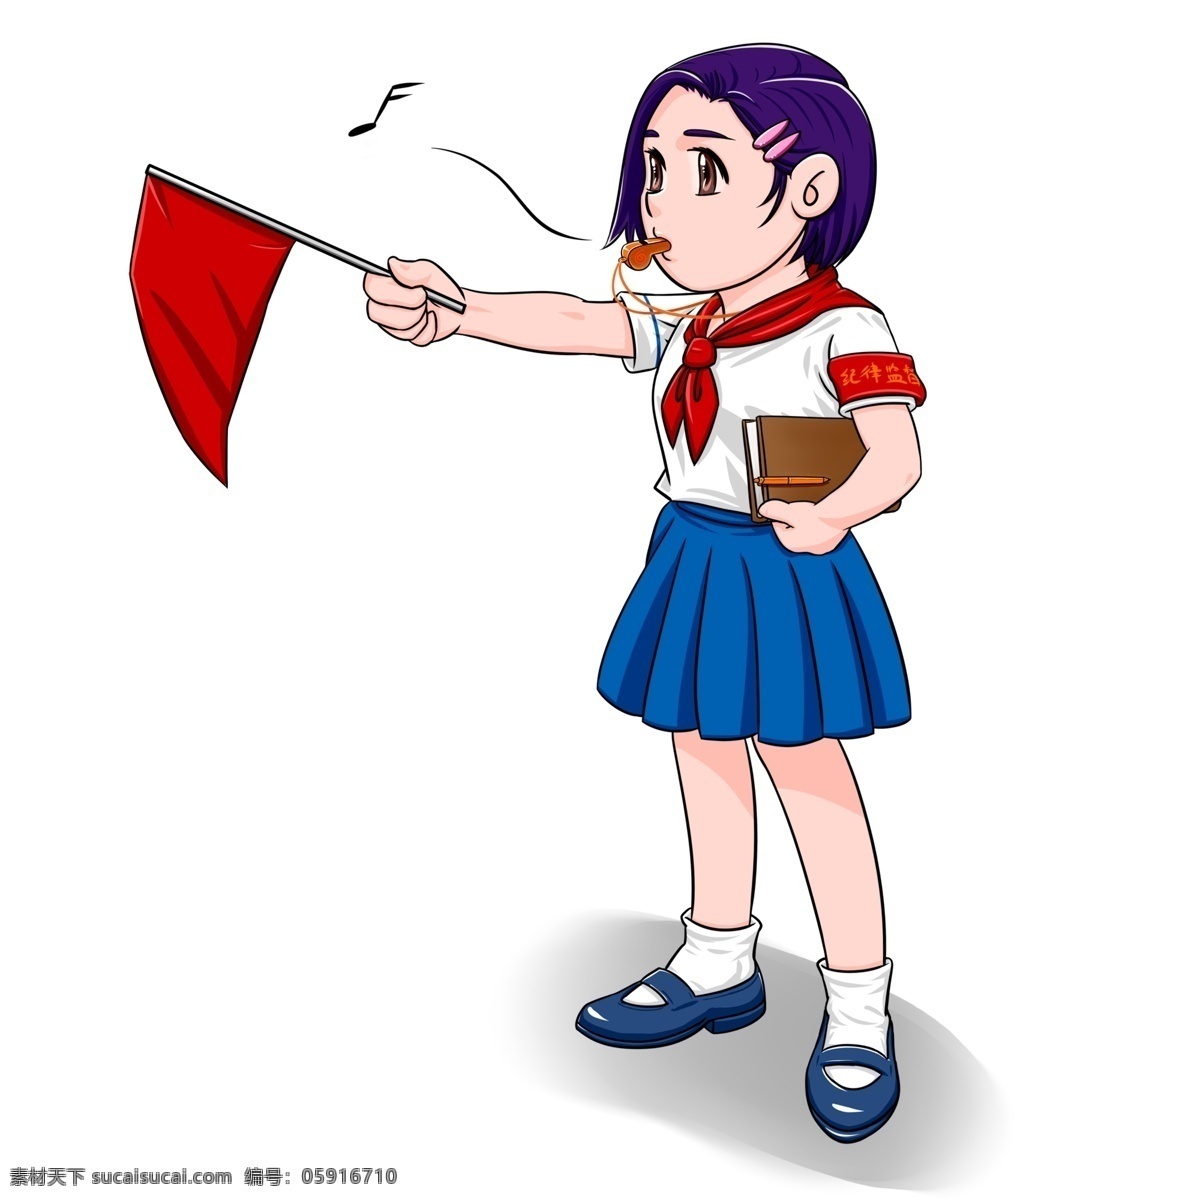 可爱 卡通 小学生 形象 校园 女孩 红领巾 校服